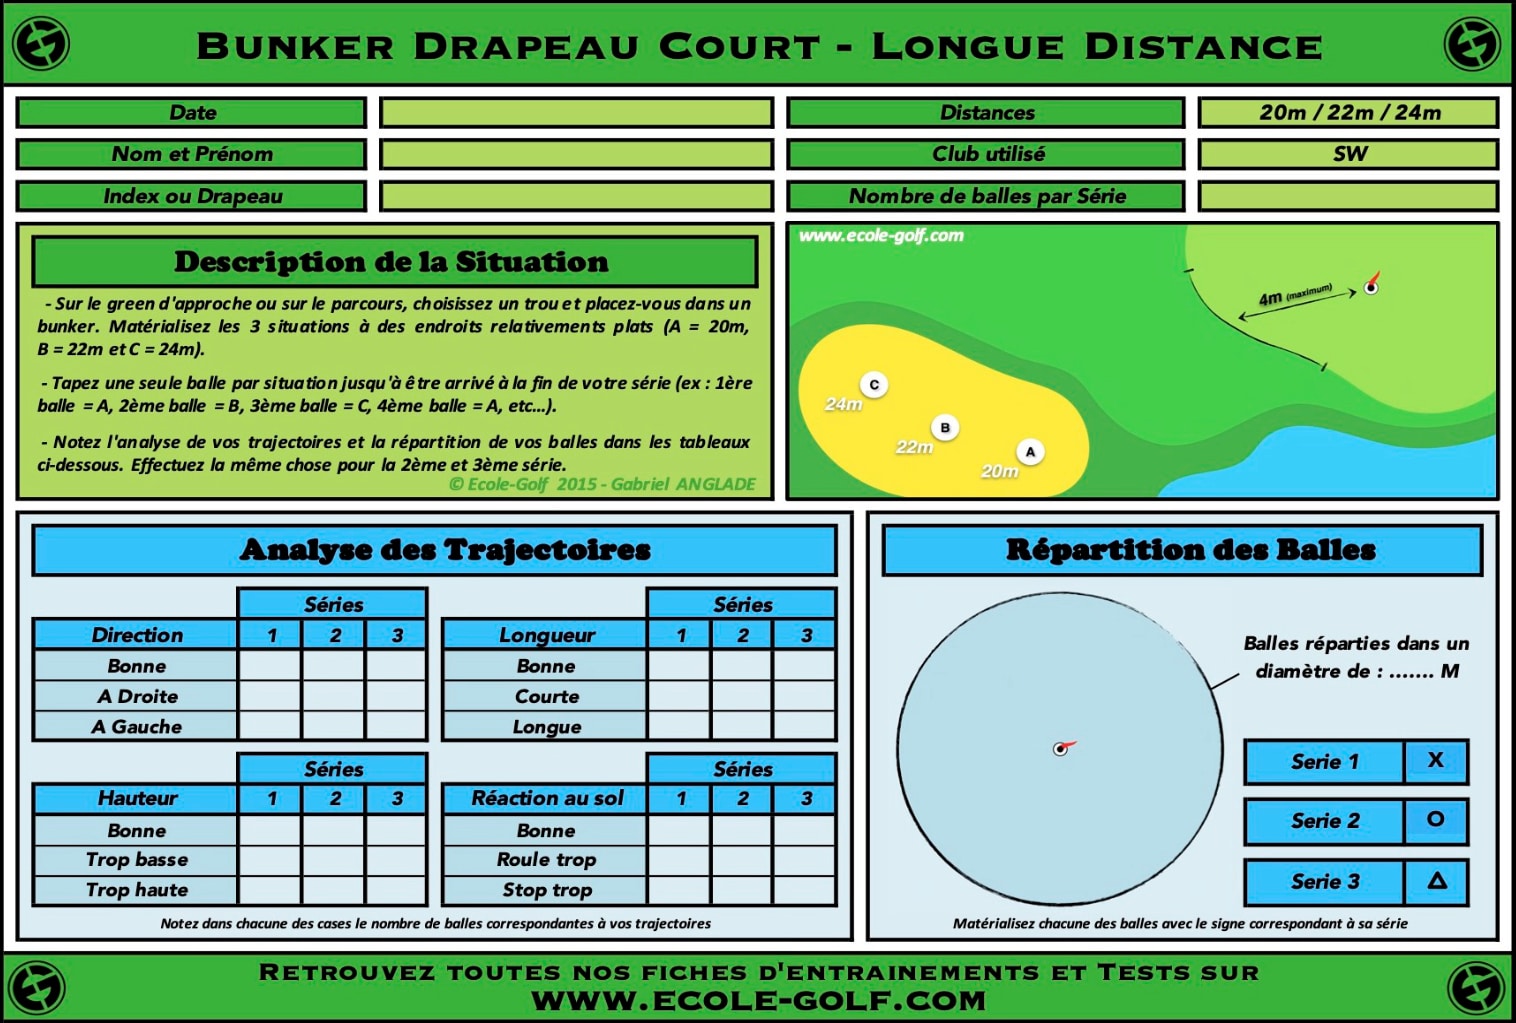 Bunker Drapeau Court - Longue Distance